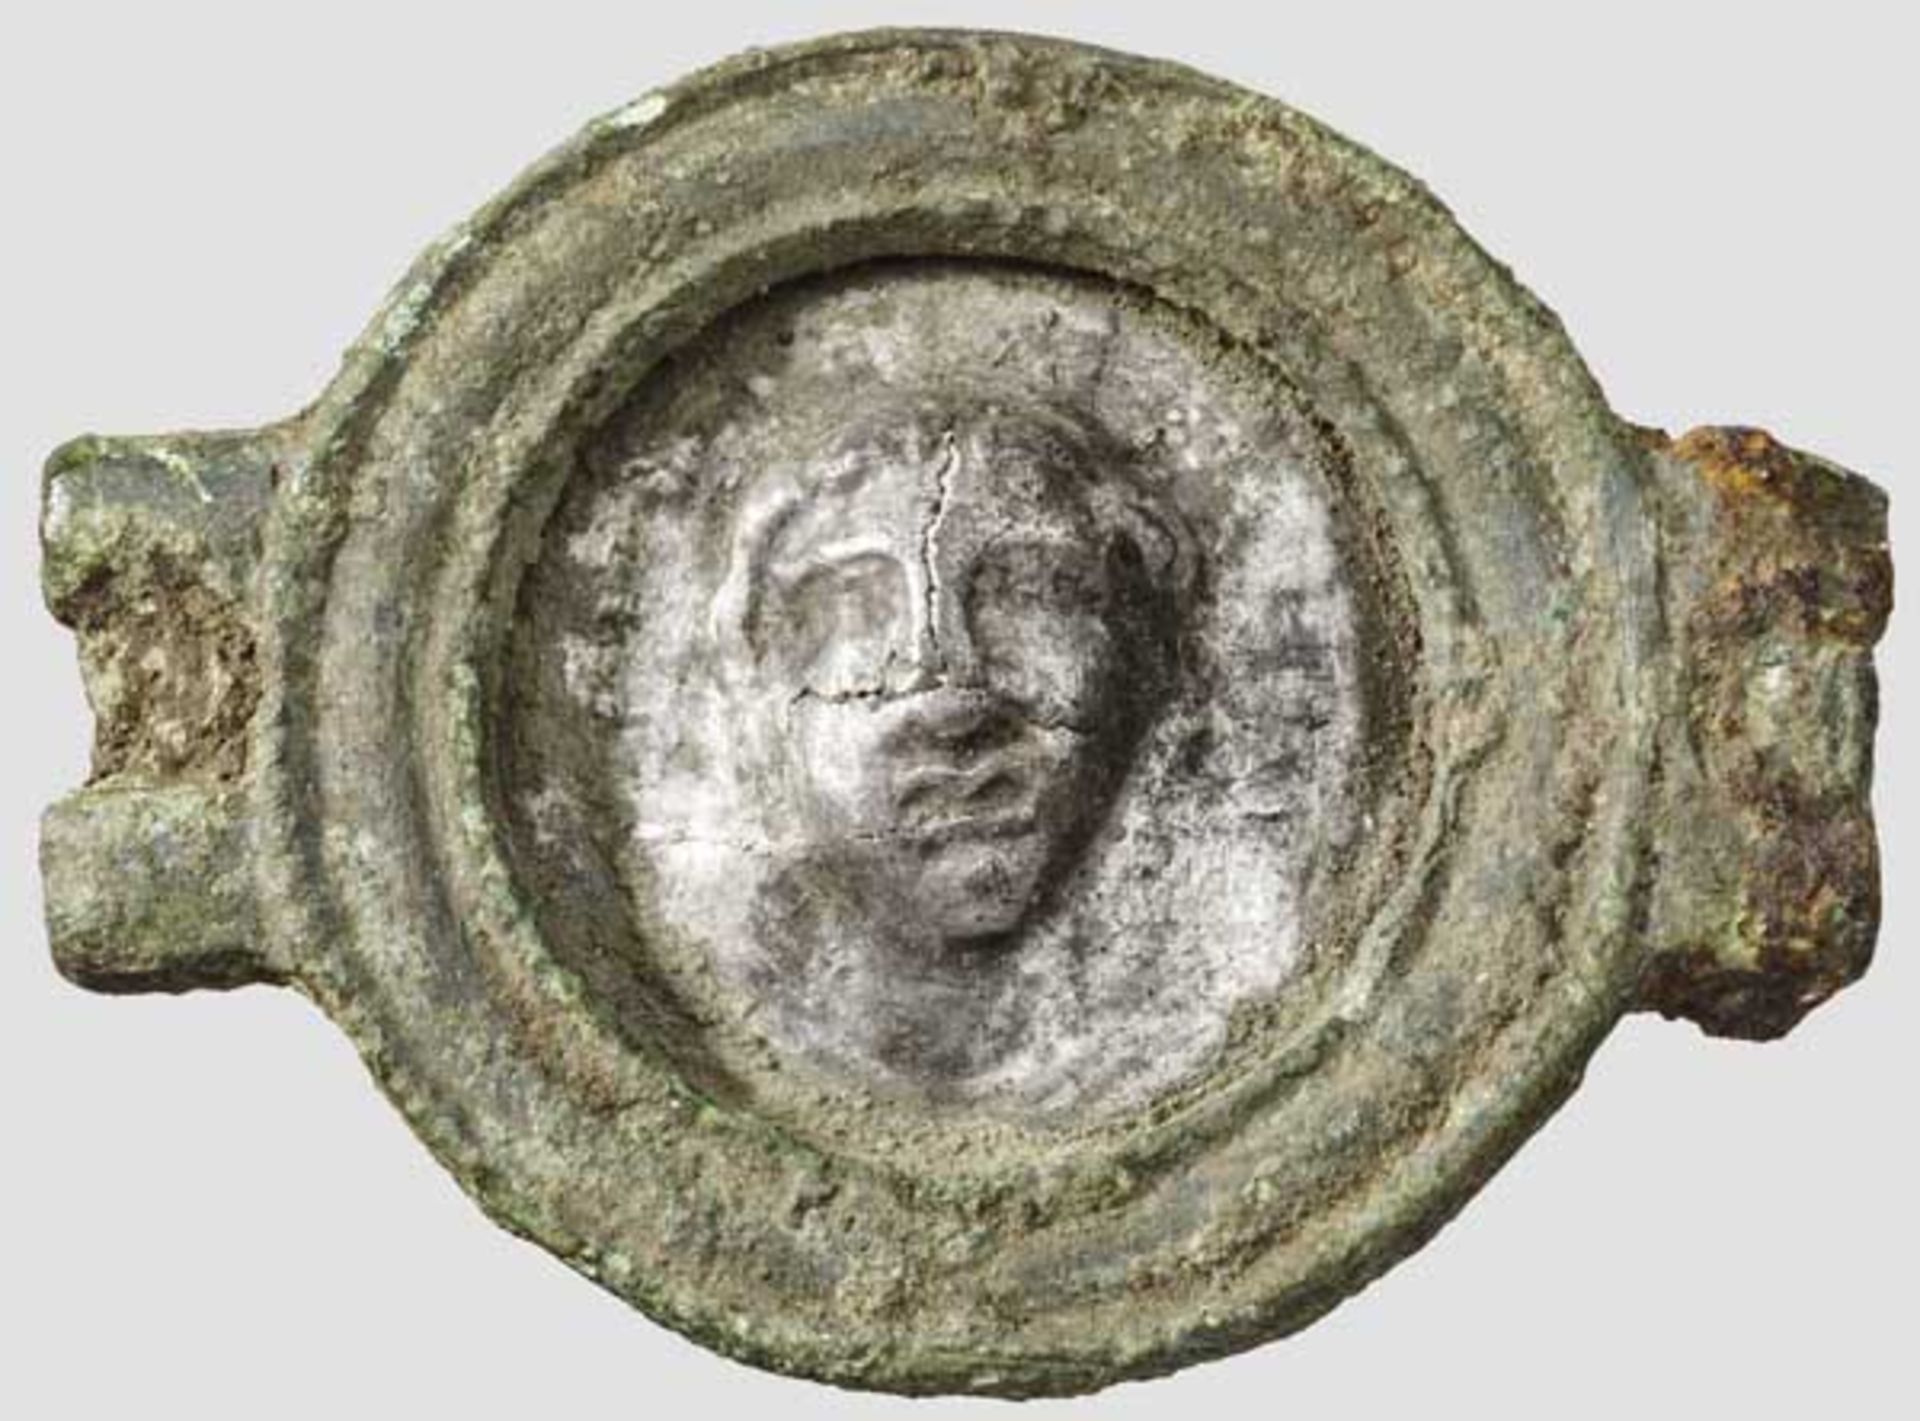 Bronzescheibe von römischem Pferdegeschirr mit figuralem Silberblechmedaillon, 1. Jhdt. Durch